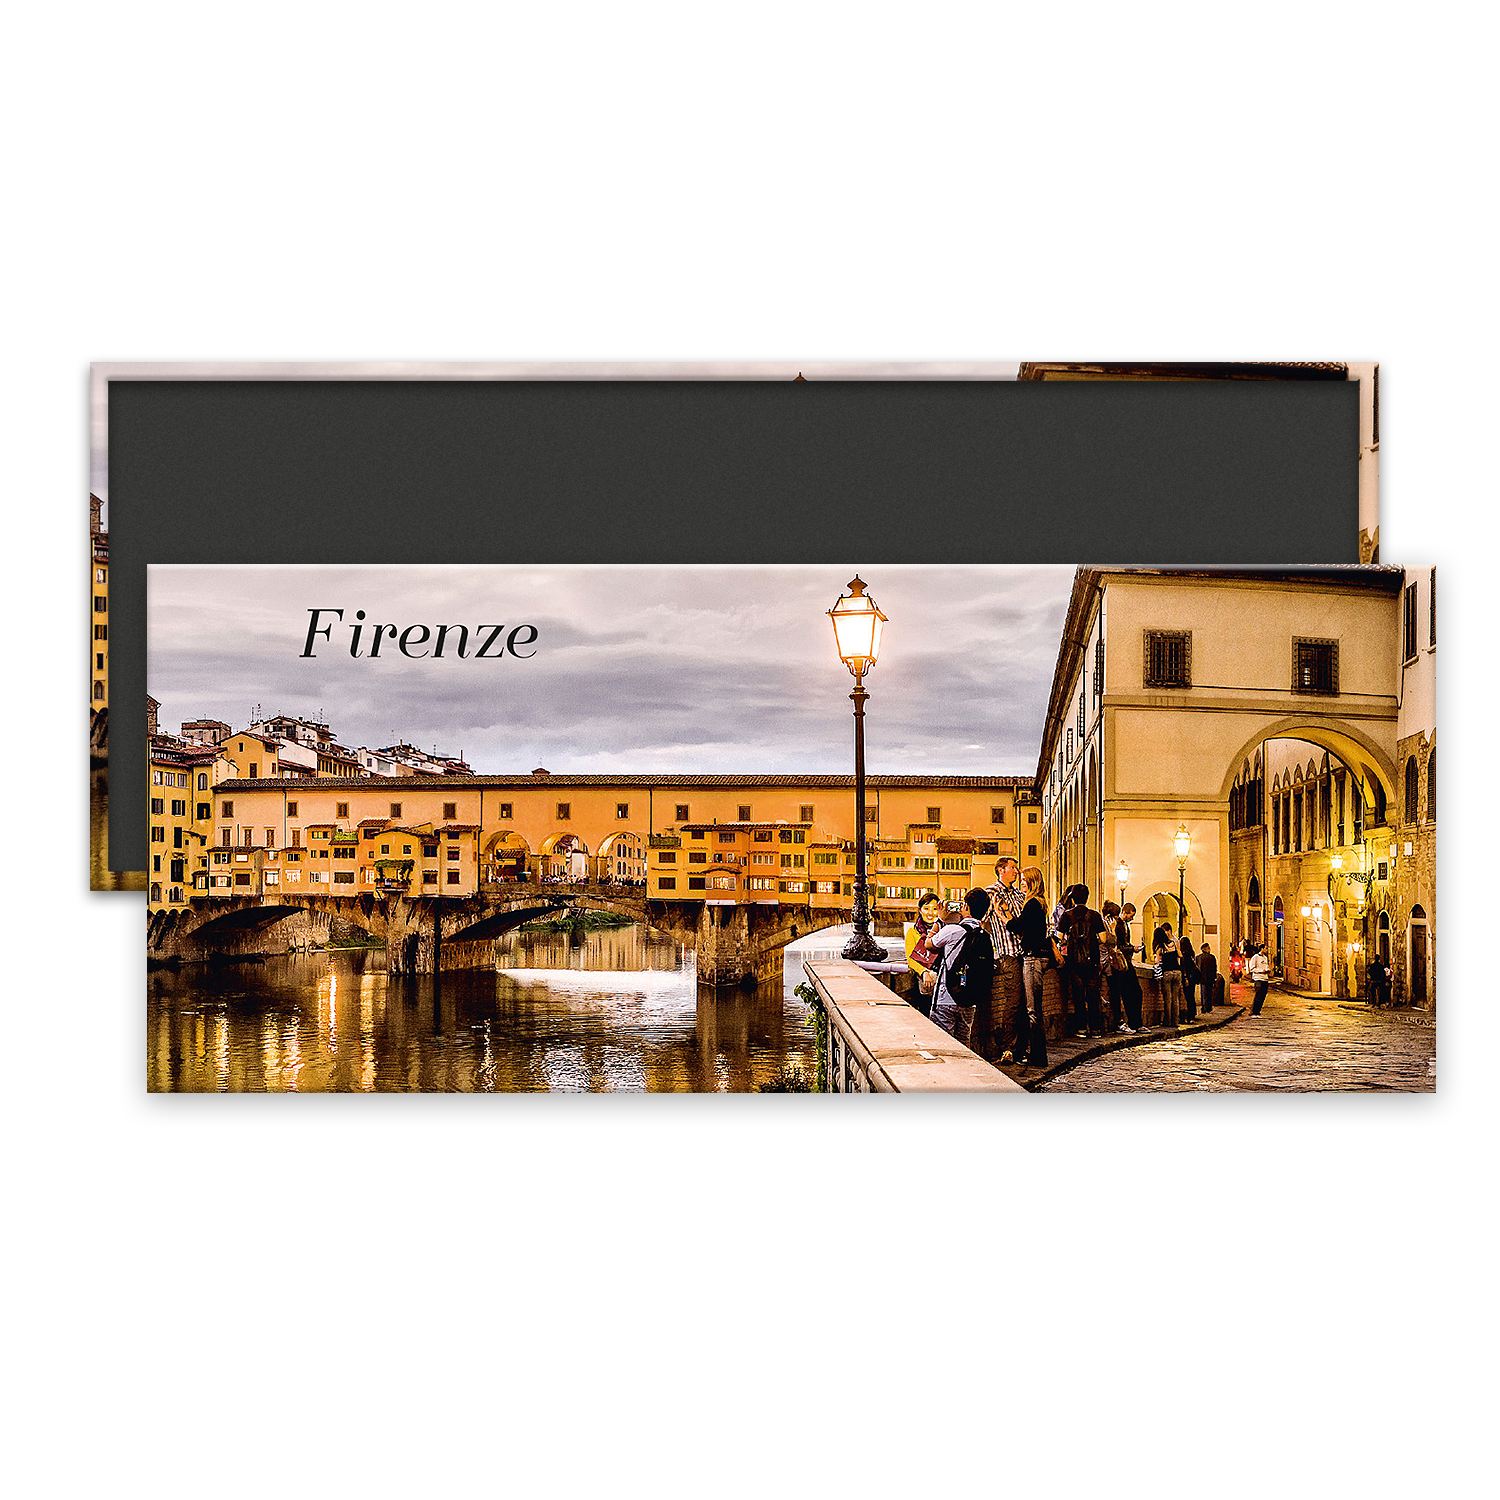 FI M 077 - Firenze, Ponte Vecchio